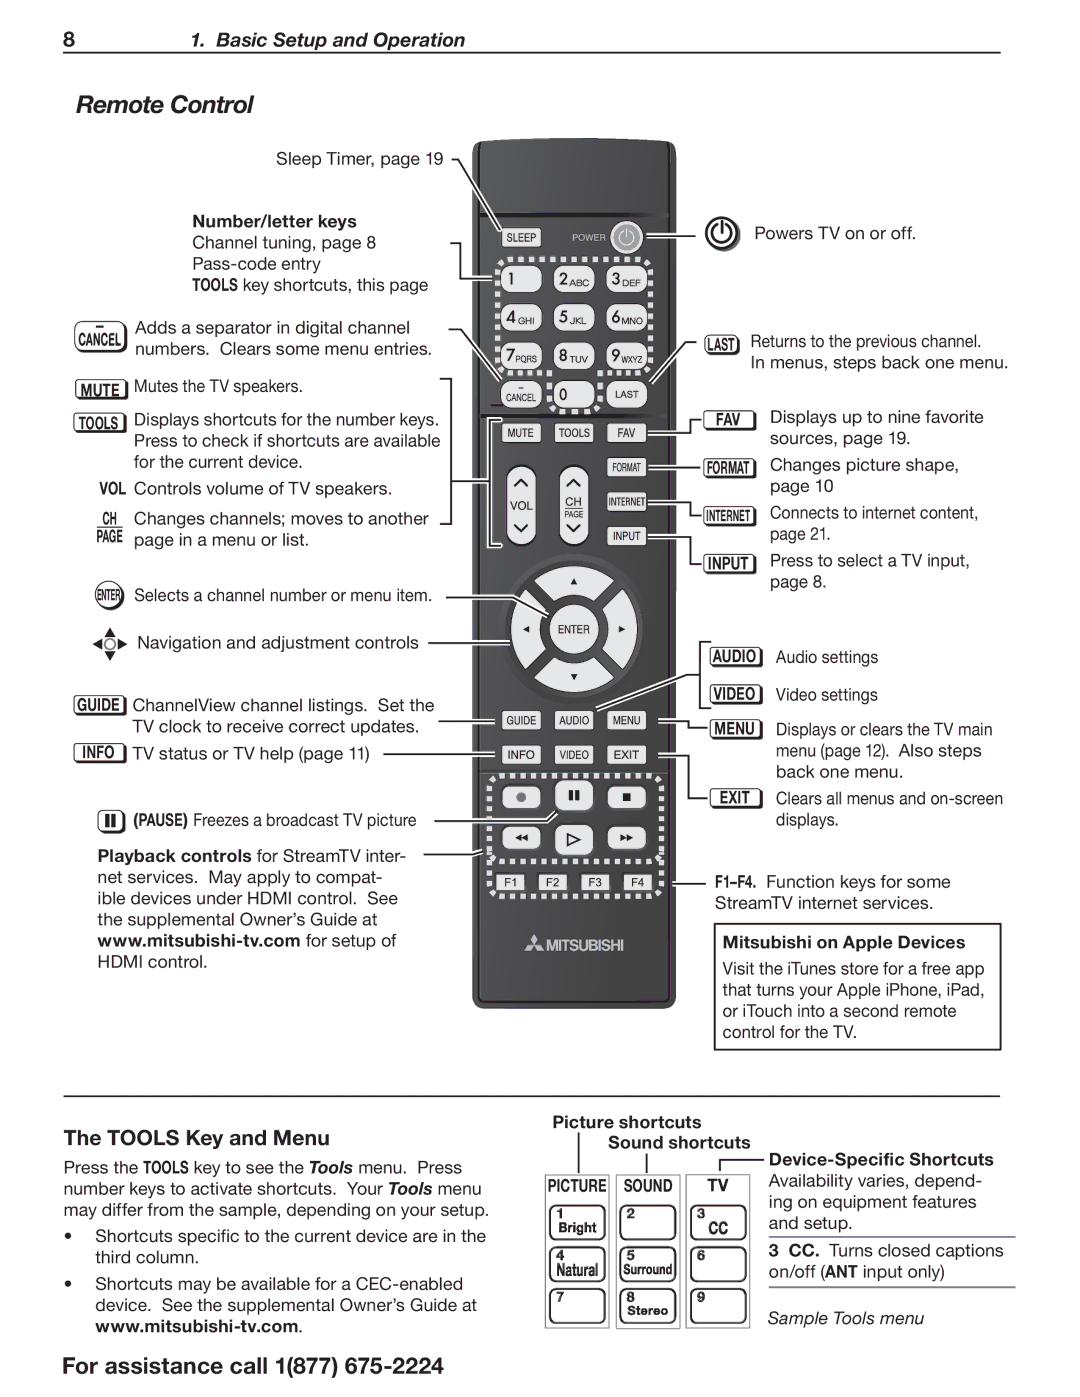 Mitsubishi Electronics L75-A94 manual Remote Control, Tools Key and Menu 